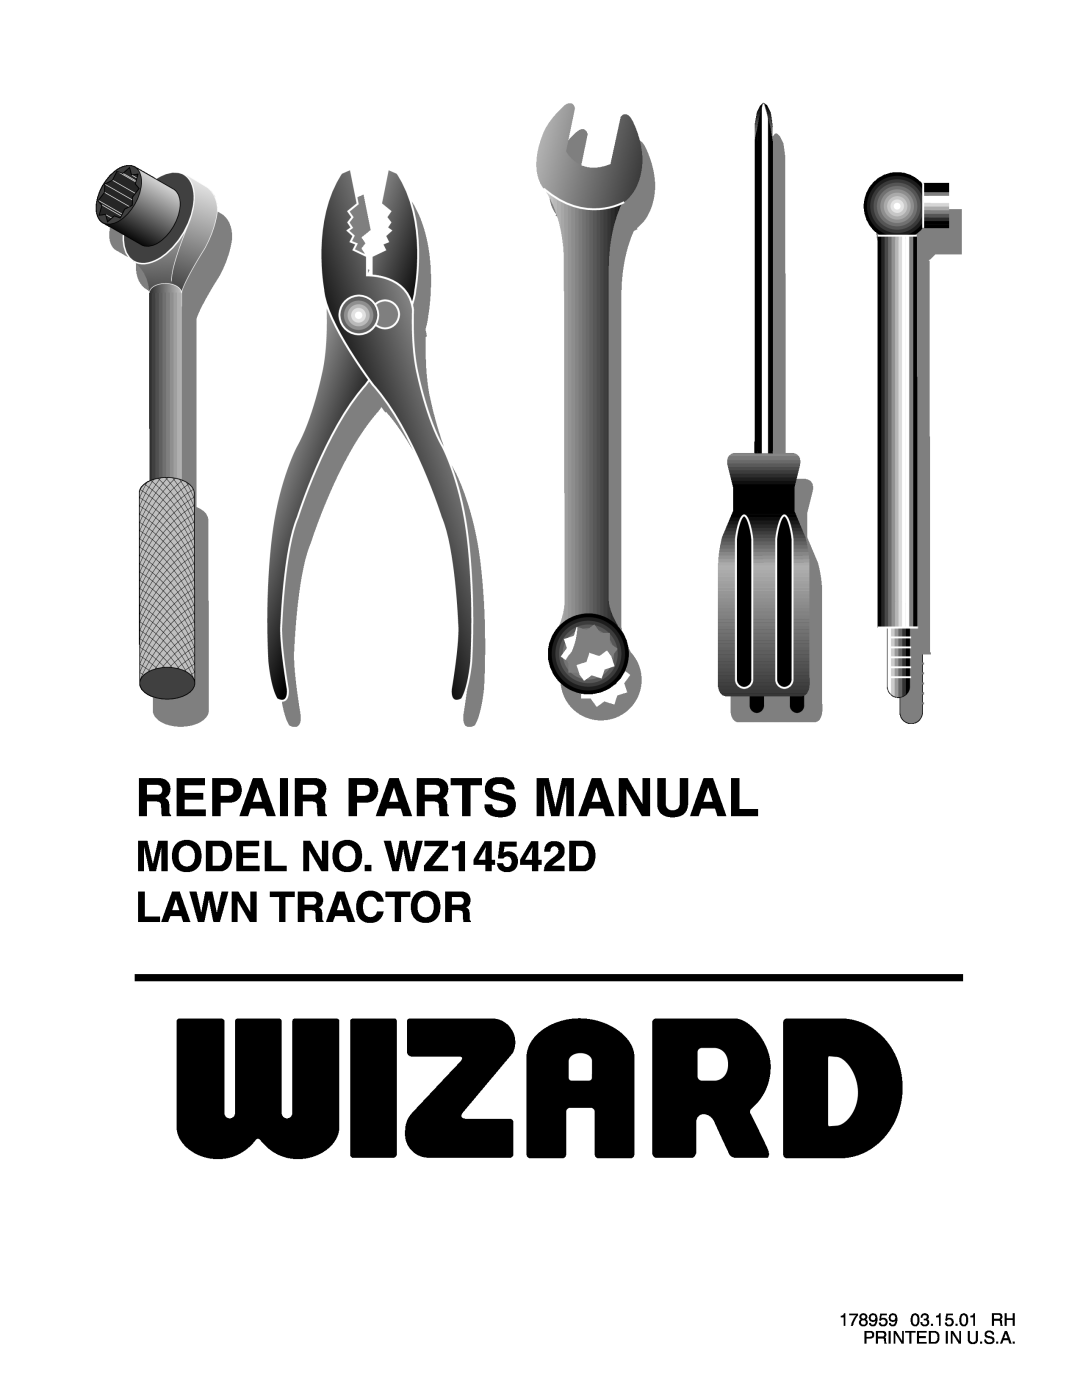 Wizard Ca Co manual MODEL NO. WZ14542D LAWN TRACTOR, Repair Parts Manual 